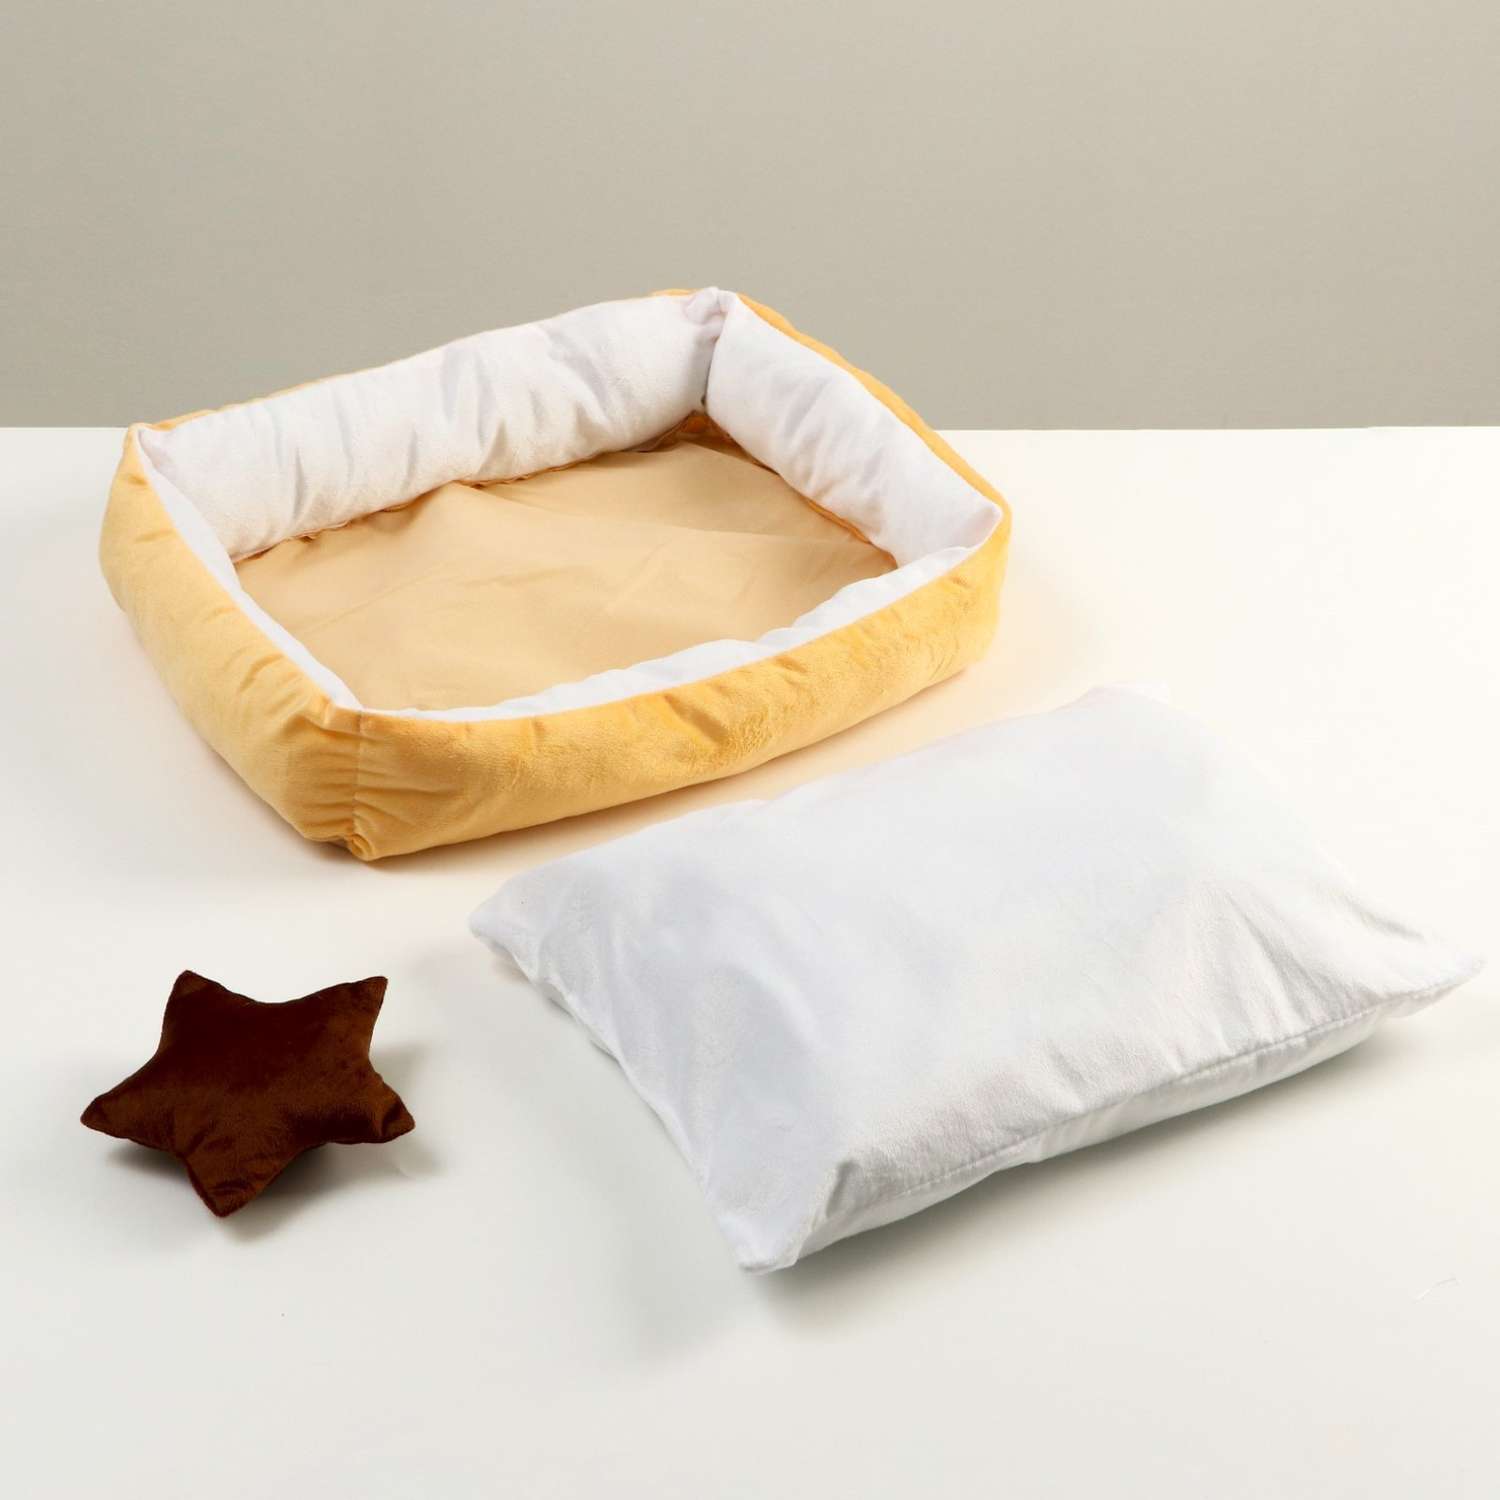 Лежанка Пижон мягкая прямоугольная со съемной подушкой + игрушка звезда 54х42х11 см персик - фото 6